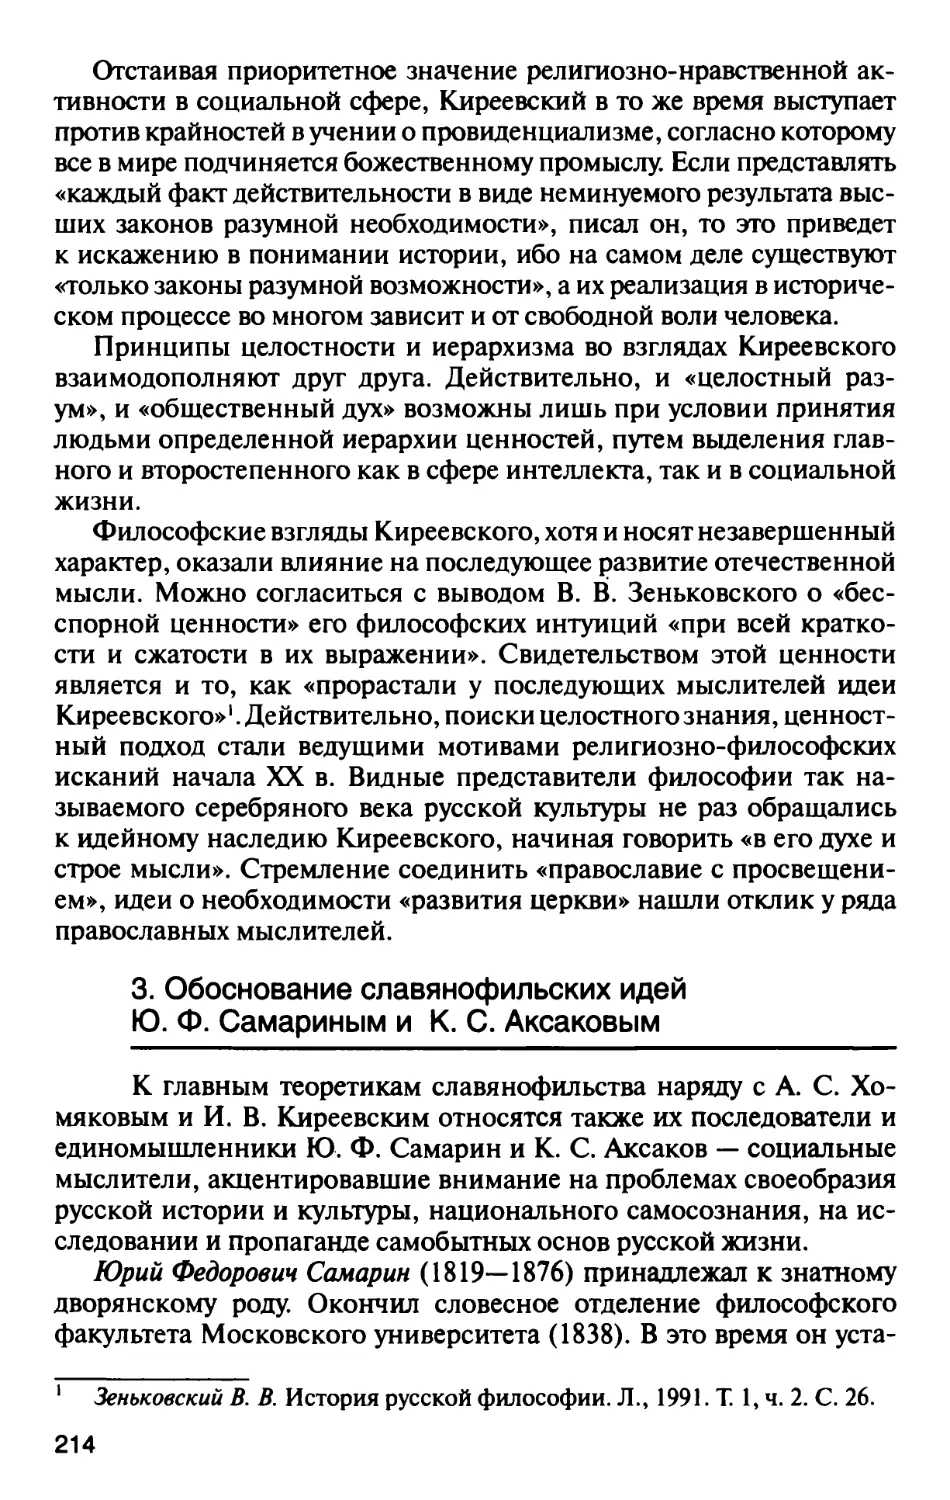 3. Обоснование славянофильских идей Ю.Ф. Самариным и К.С. Аксаковым